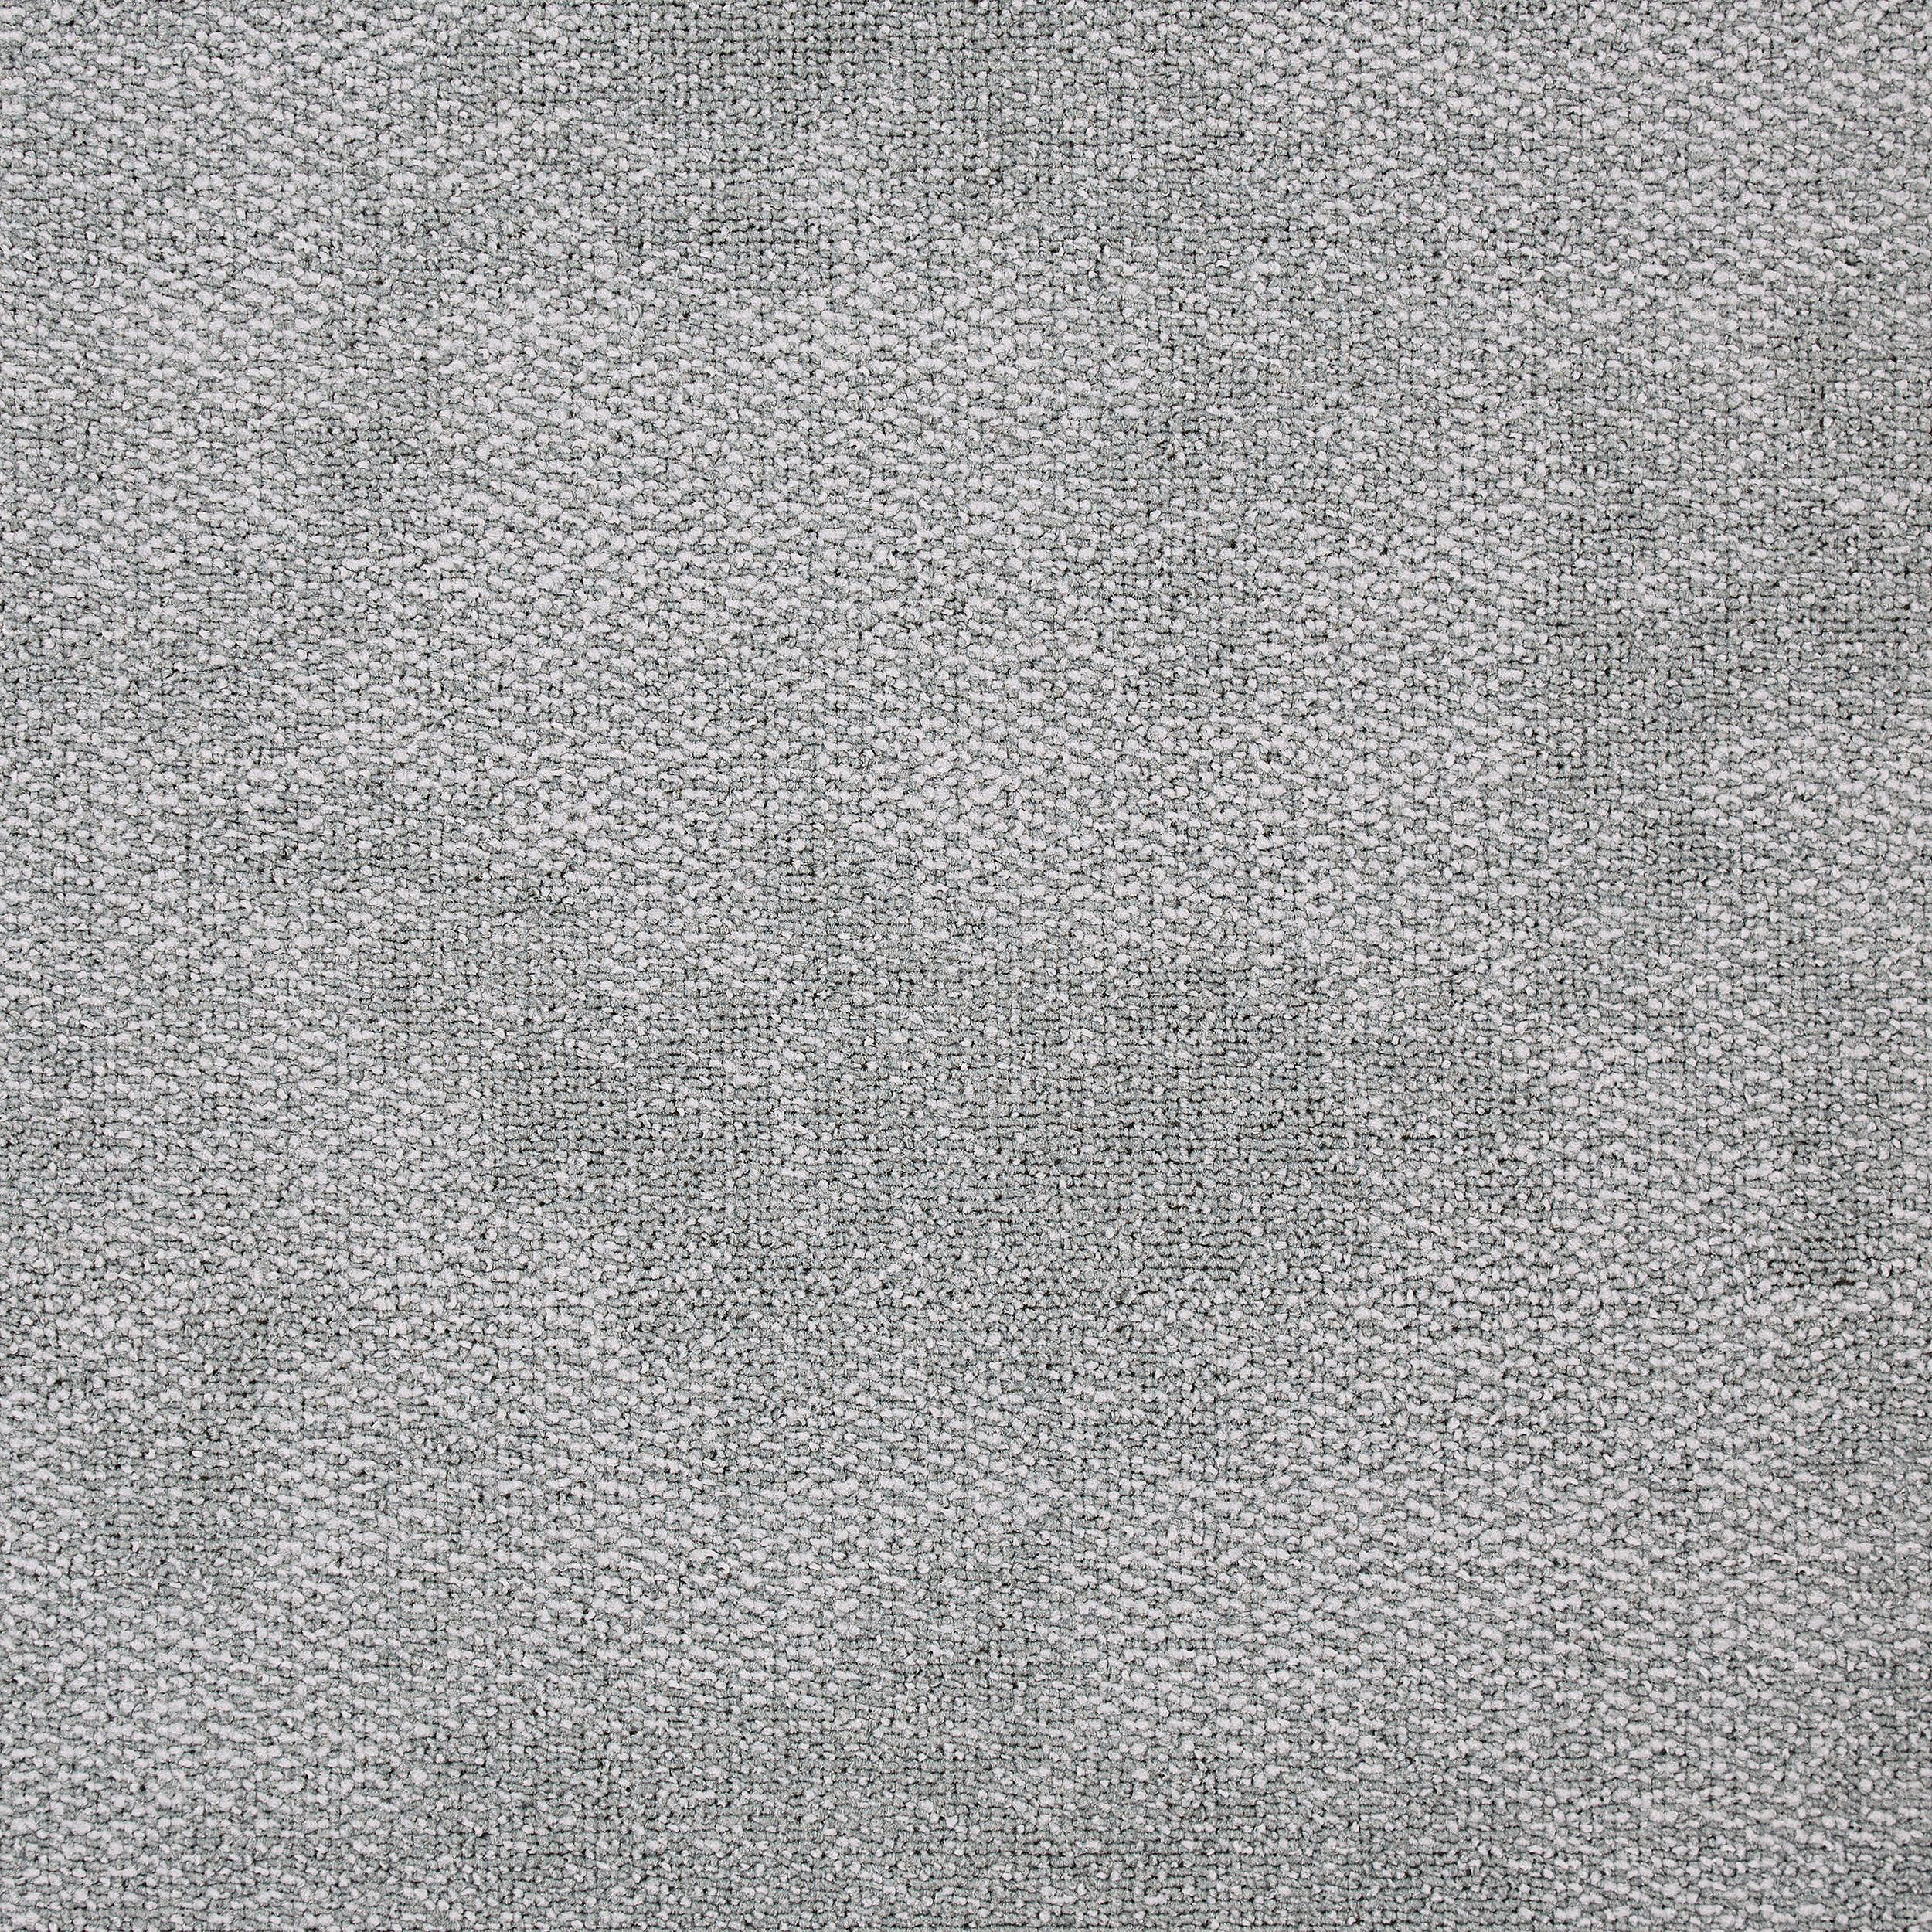 Composure Carpet Tile In Isolation número de imagen 7